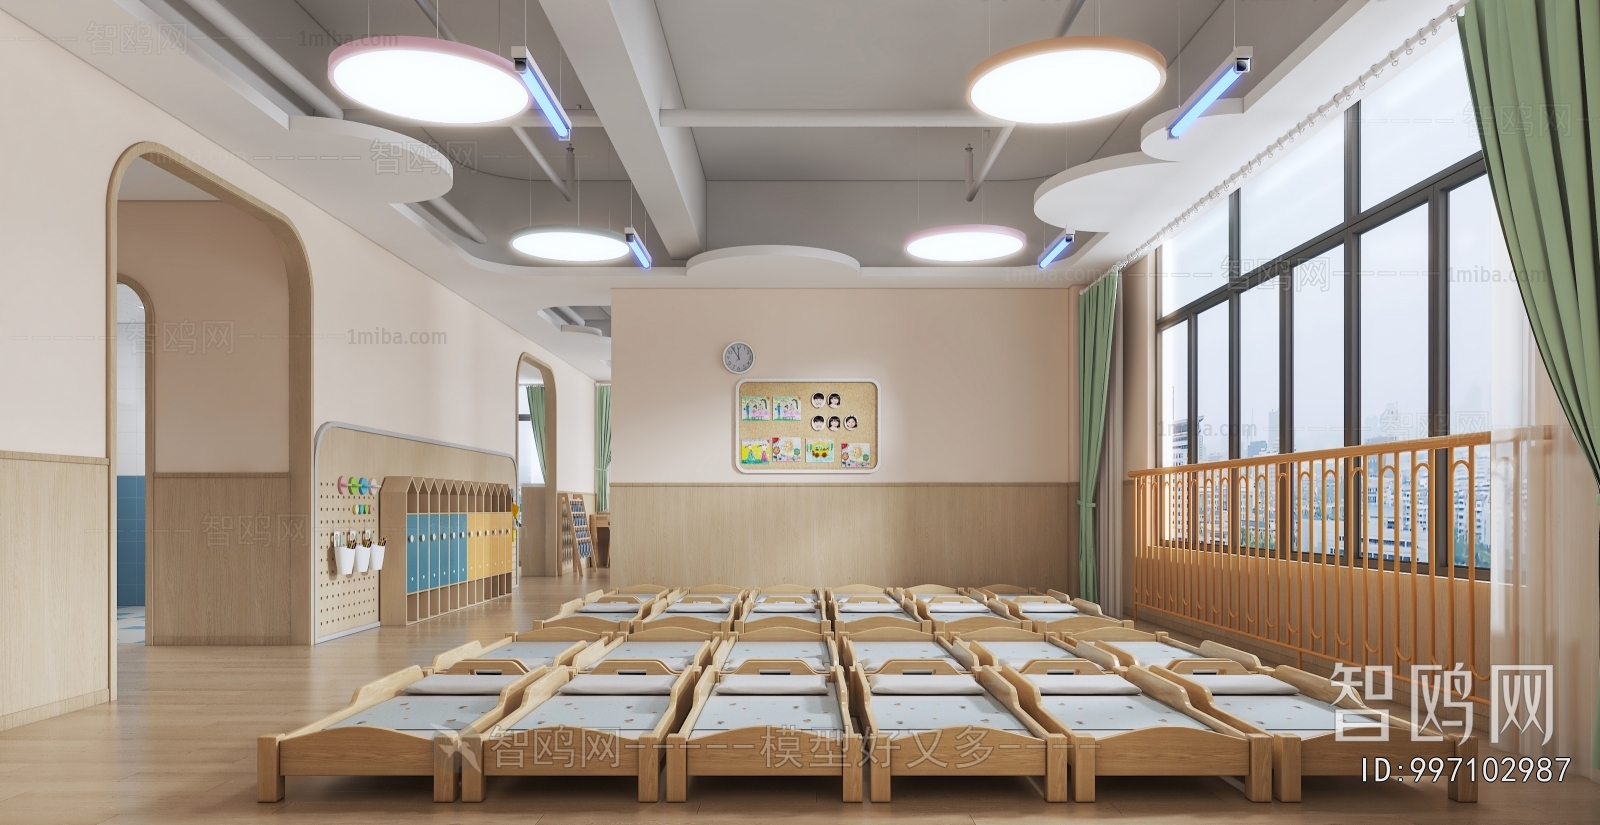 Modern Kindergarten Classrooms